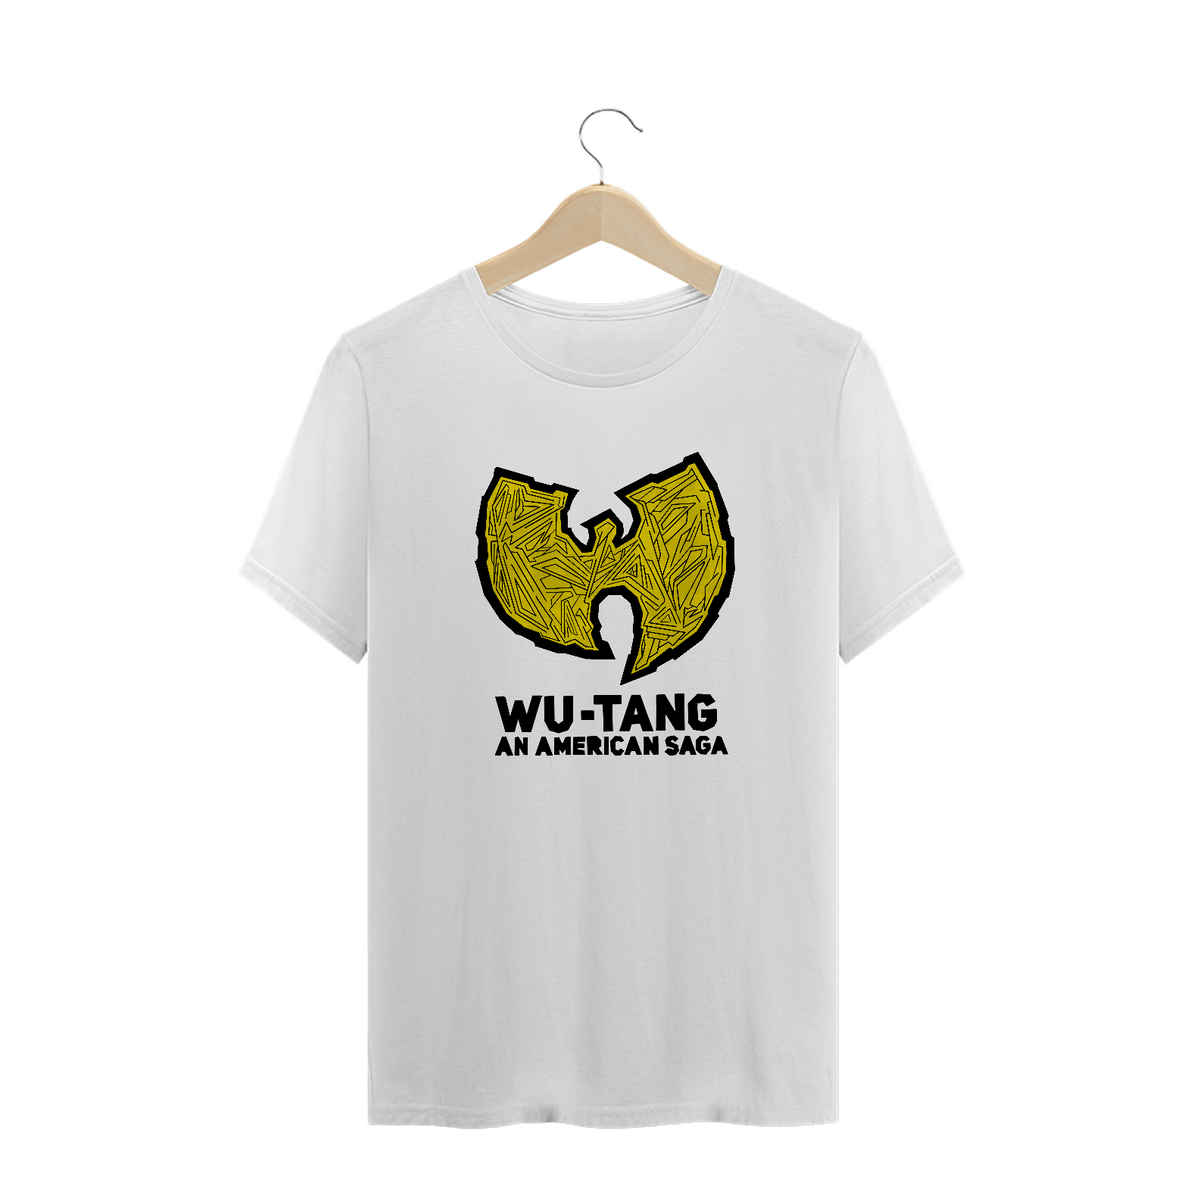 Nome do produto: Camiseta de Malha Prime Wu Tang An American Saga Branca